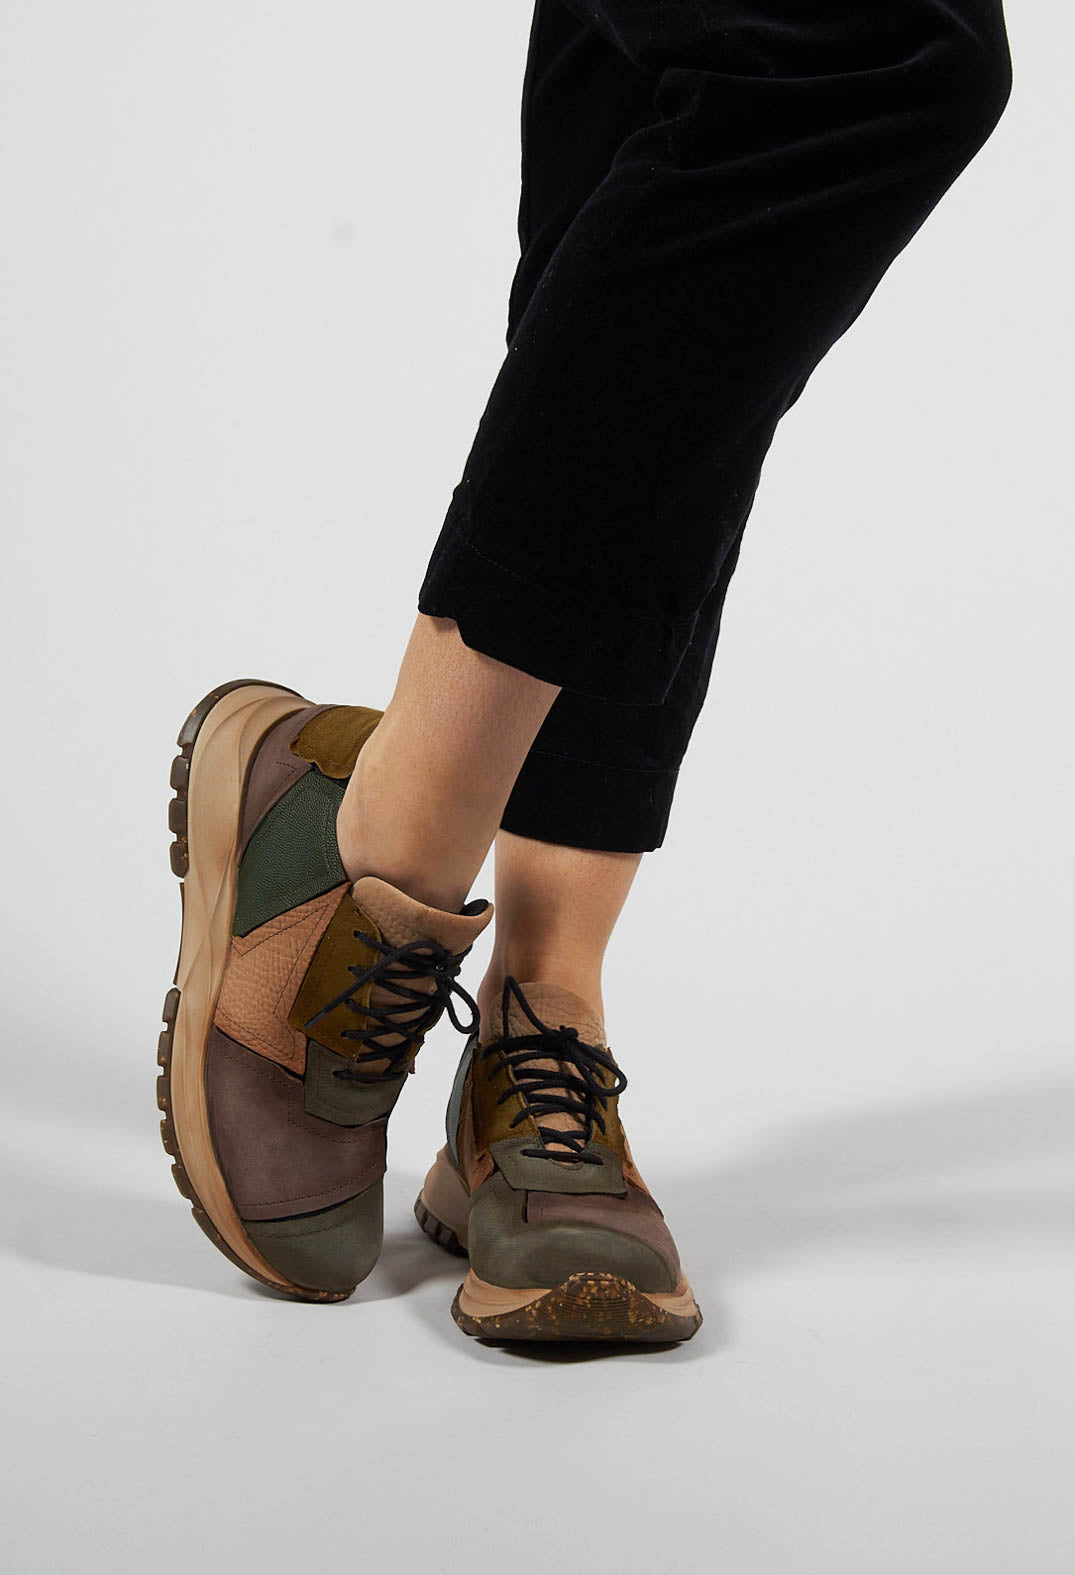 Themis Boots in Multi-Colour